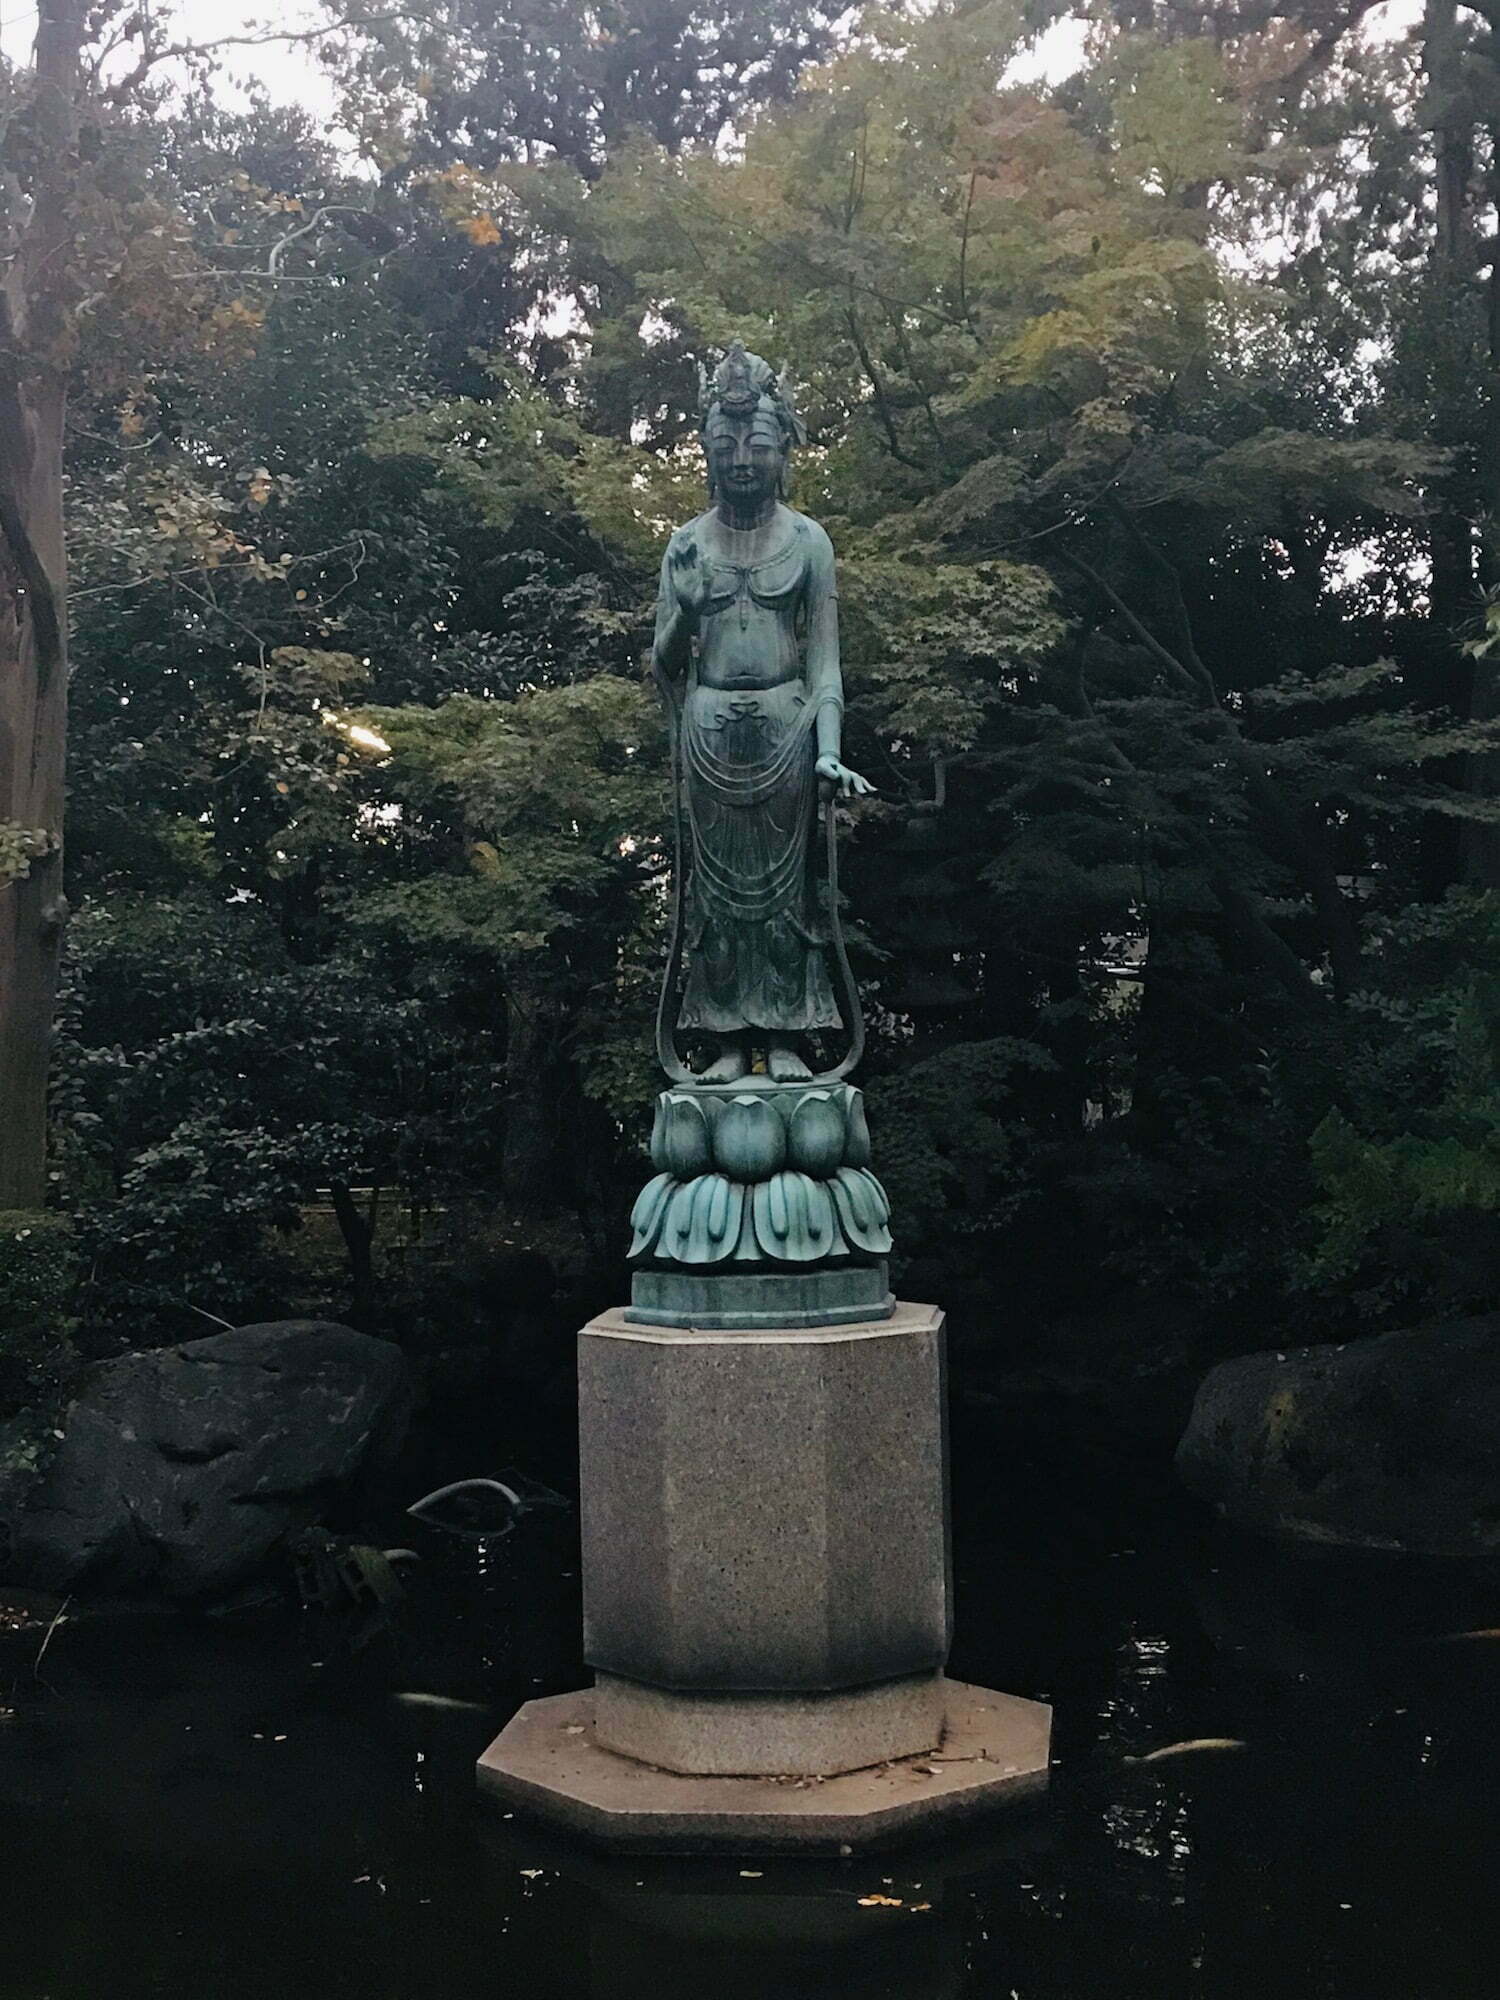 Setagaya Kannon, Goddess of mercy